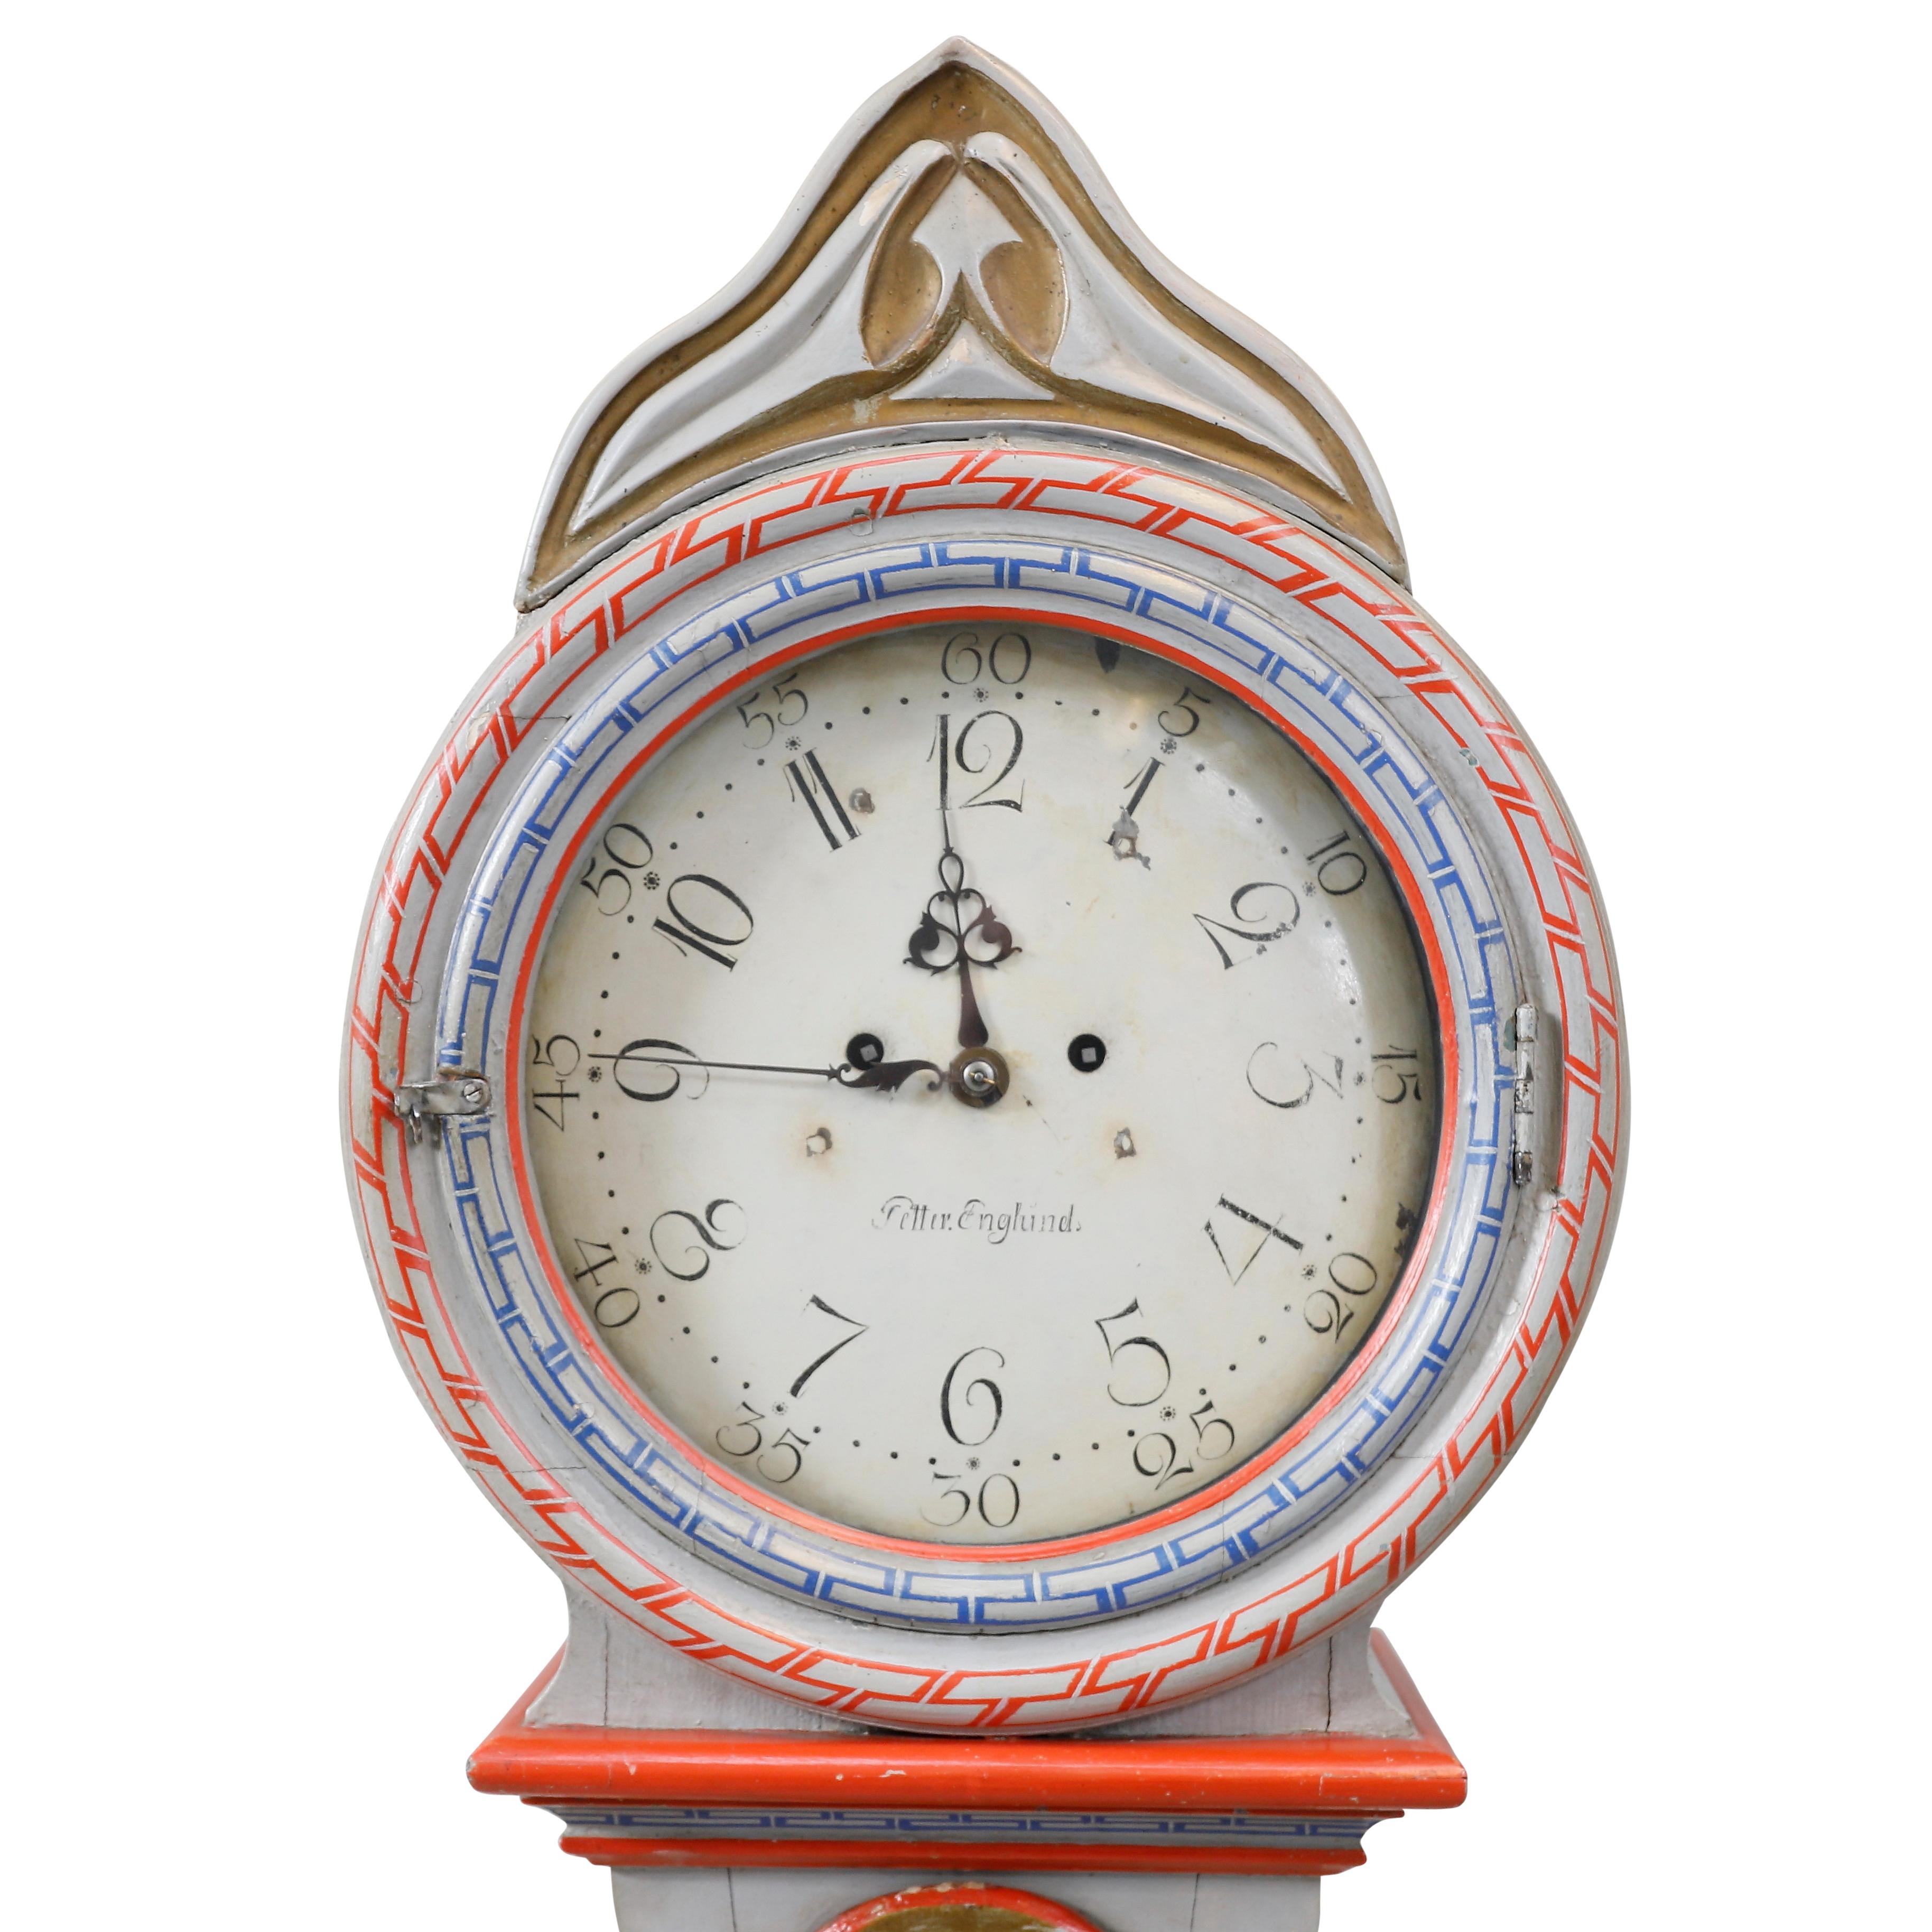 Antike schwedische Mora-Uhr aus dem 18. Jahrhundert mit handgemalten Chinoiserie-Details. Das Zifferblatt dieser Uhr trägt den Namen ihres Herstellers 